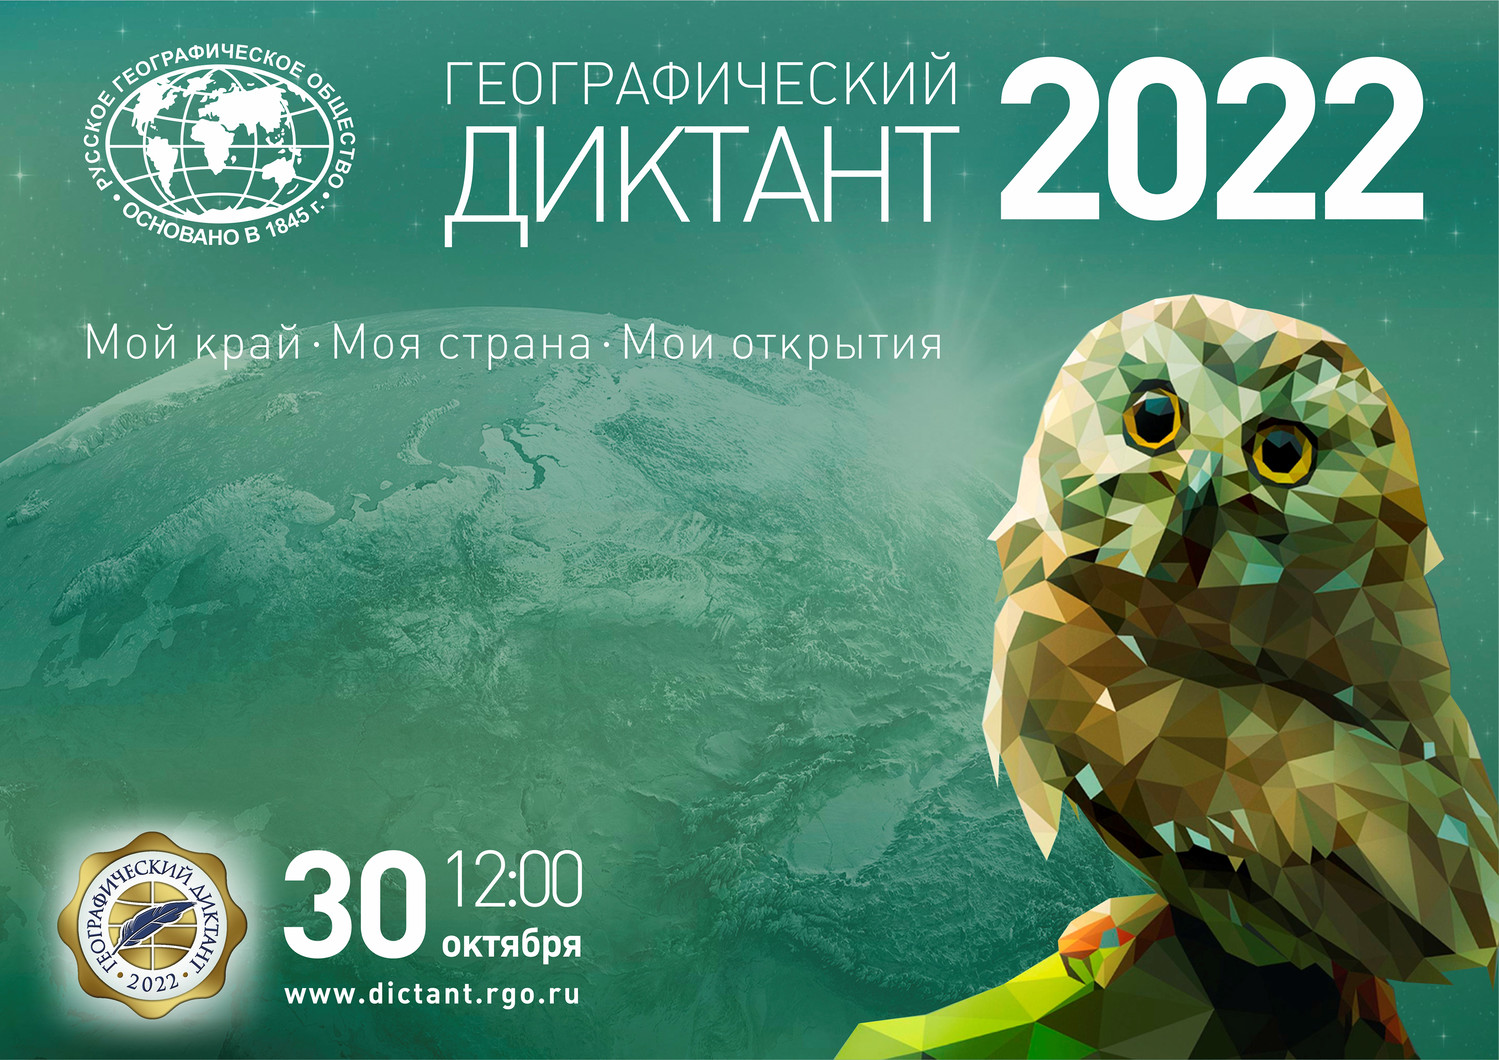 Географический диктант 2022!